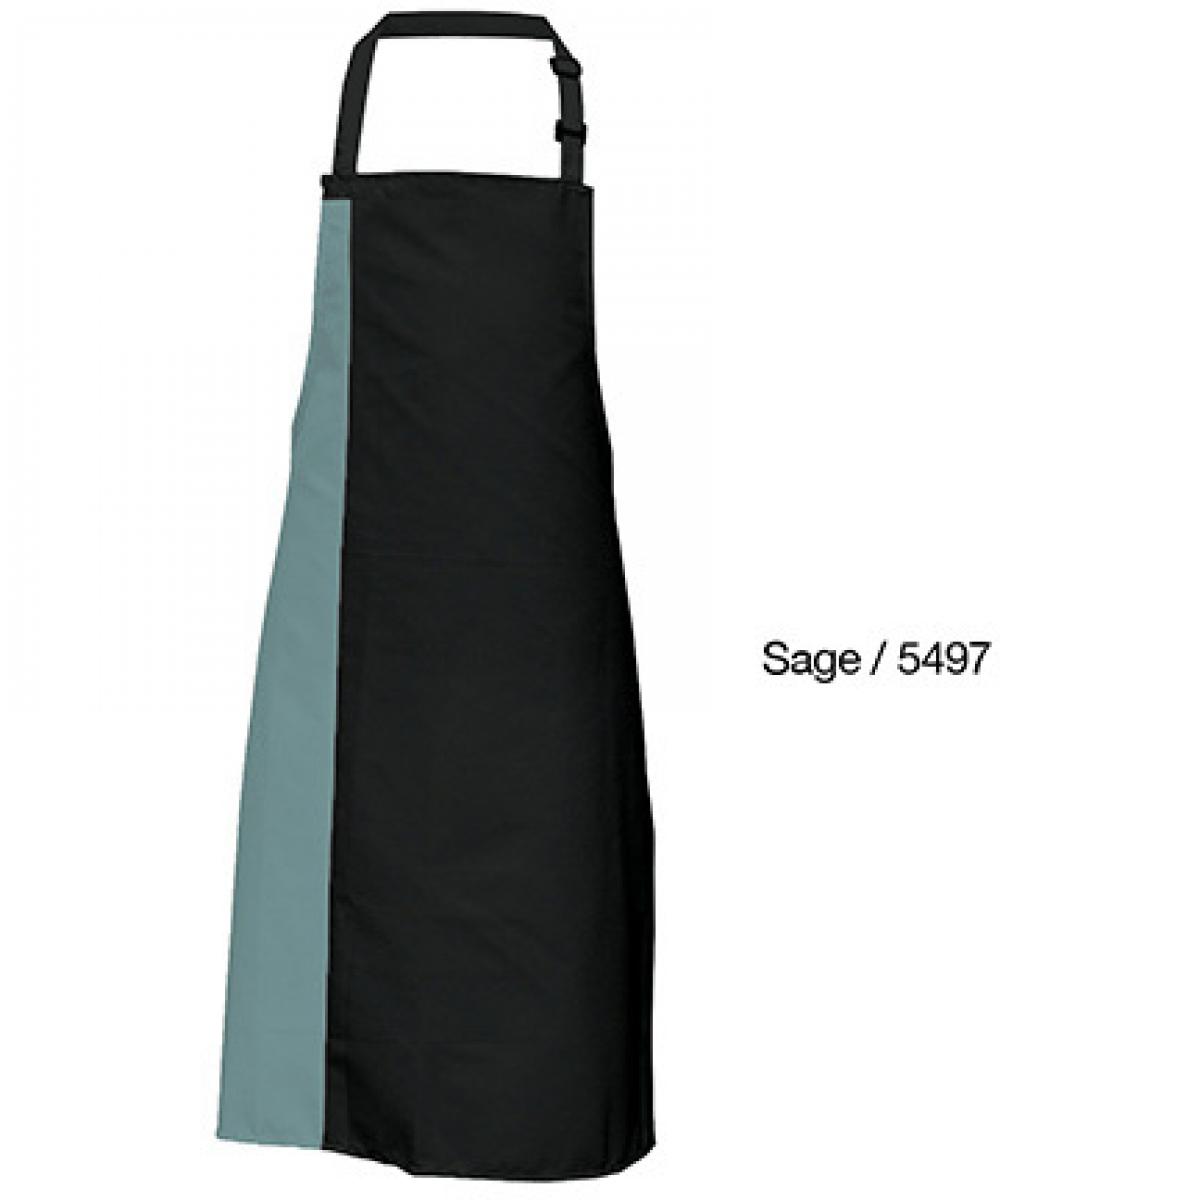 Hersteller: Link Kitchen Wear Herstellernummer: DS8572 Artikelbezeichnung: Duo Apron - 72 x 85 cm - Waschbar bis 60 °C Farbe: Black/Sage (ca. Pantone 5497)